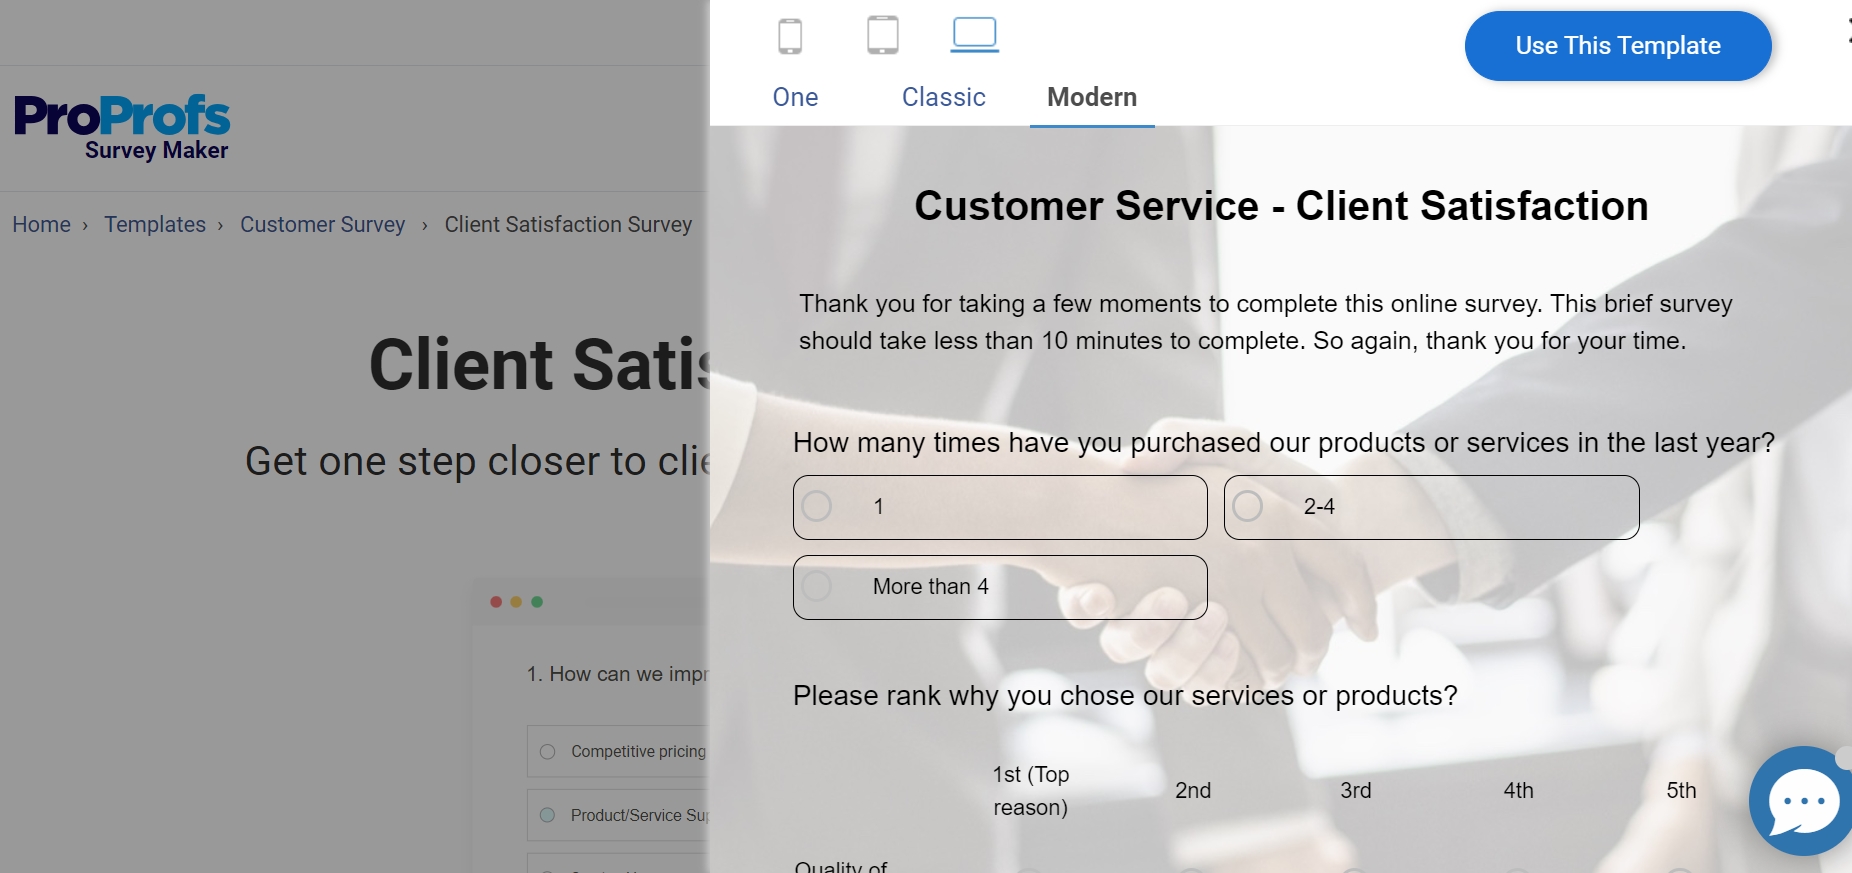 Client Satisfaction Survey Template